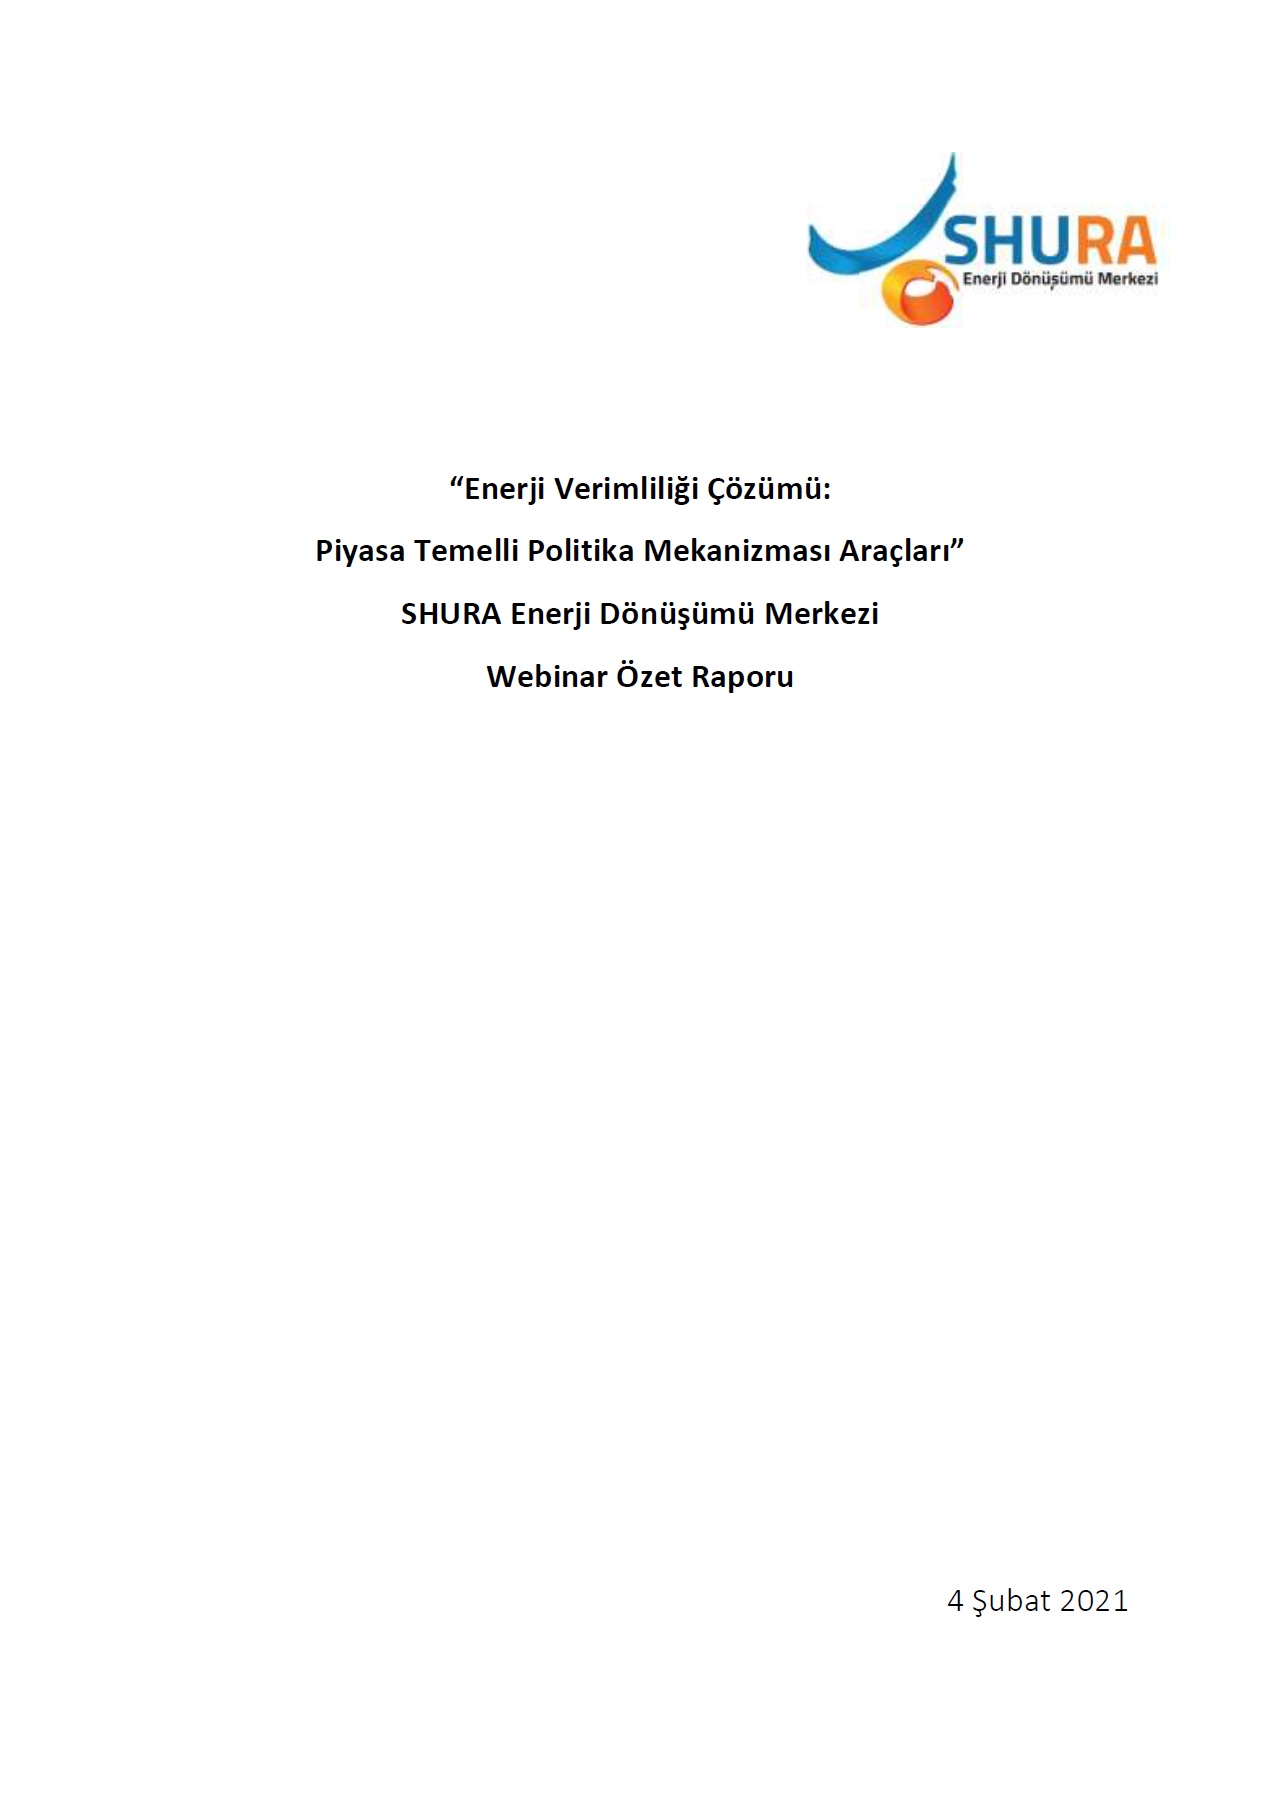 “Enerji Verimliliği Çözümü: Piyasa Temelli Politika Mekanizması Araçları” Webinar Özet Raporu